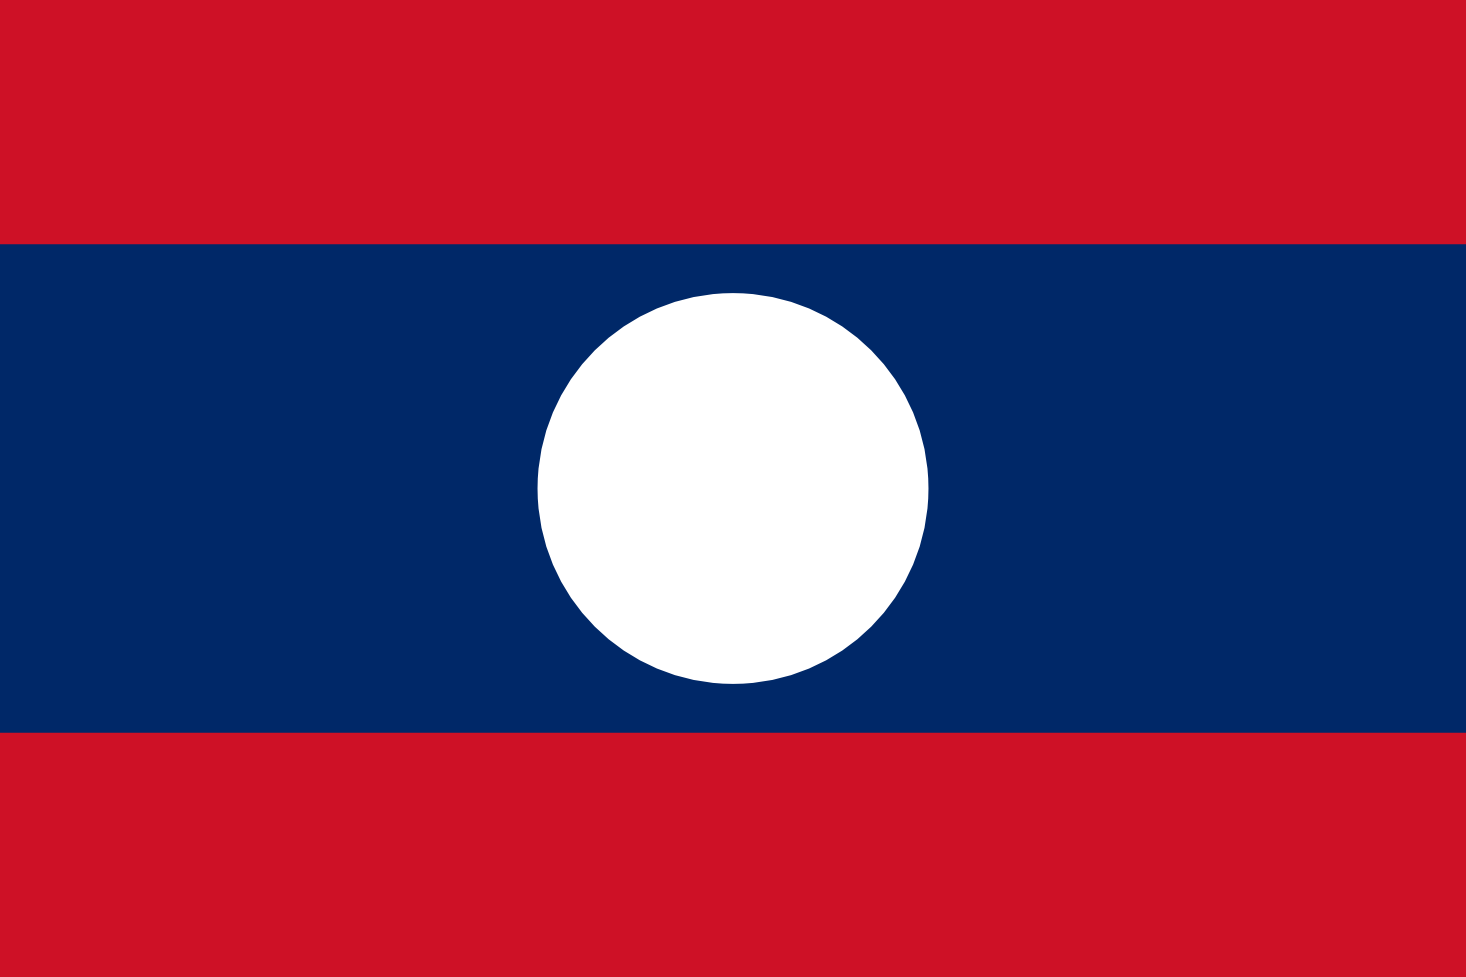 Imagem, bandeira do estado do estado da Laos - na resolucao de 1466x977 - Leste da Ásia